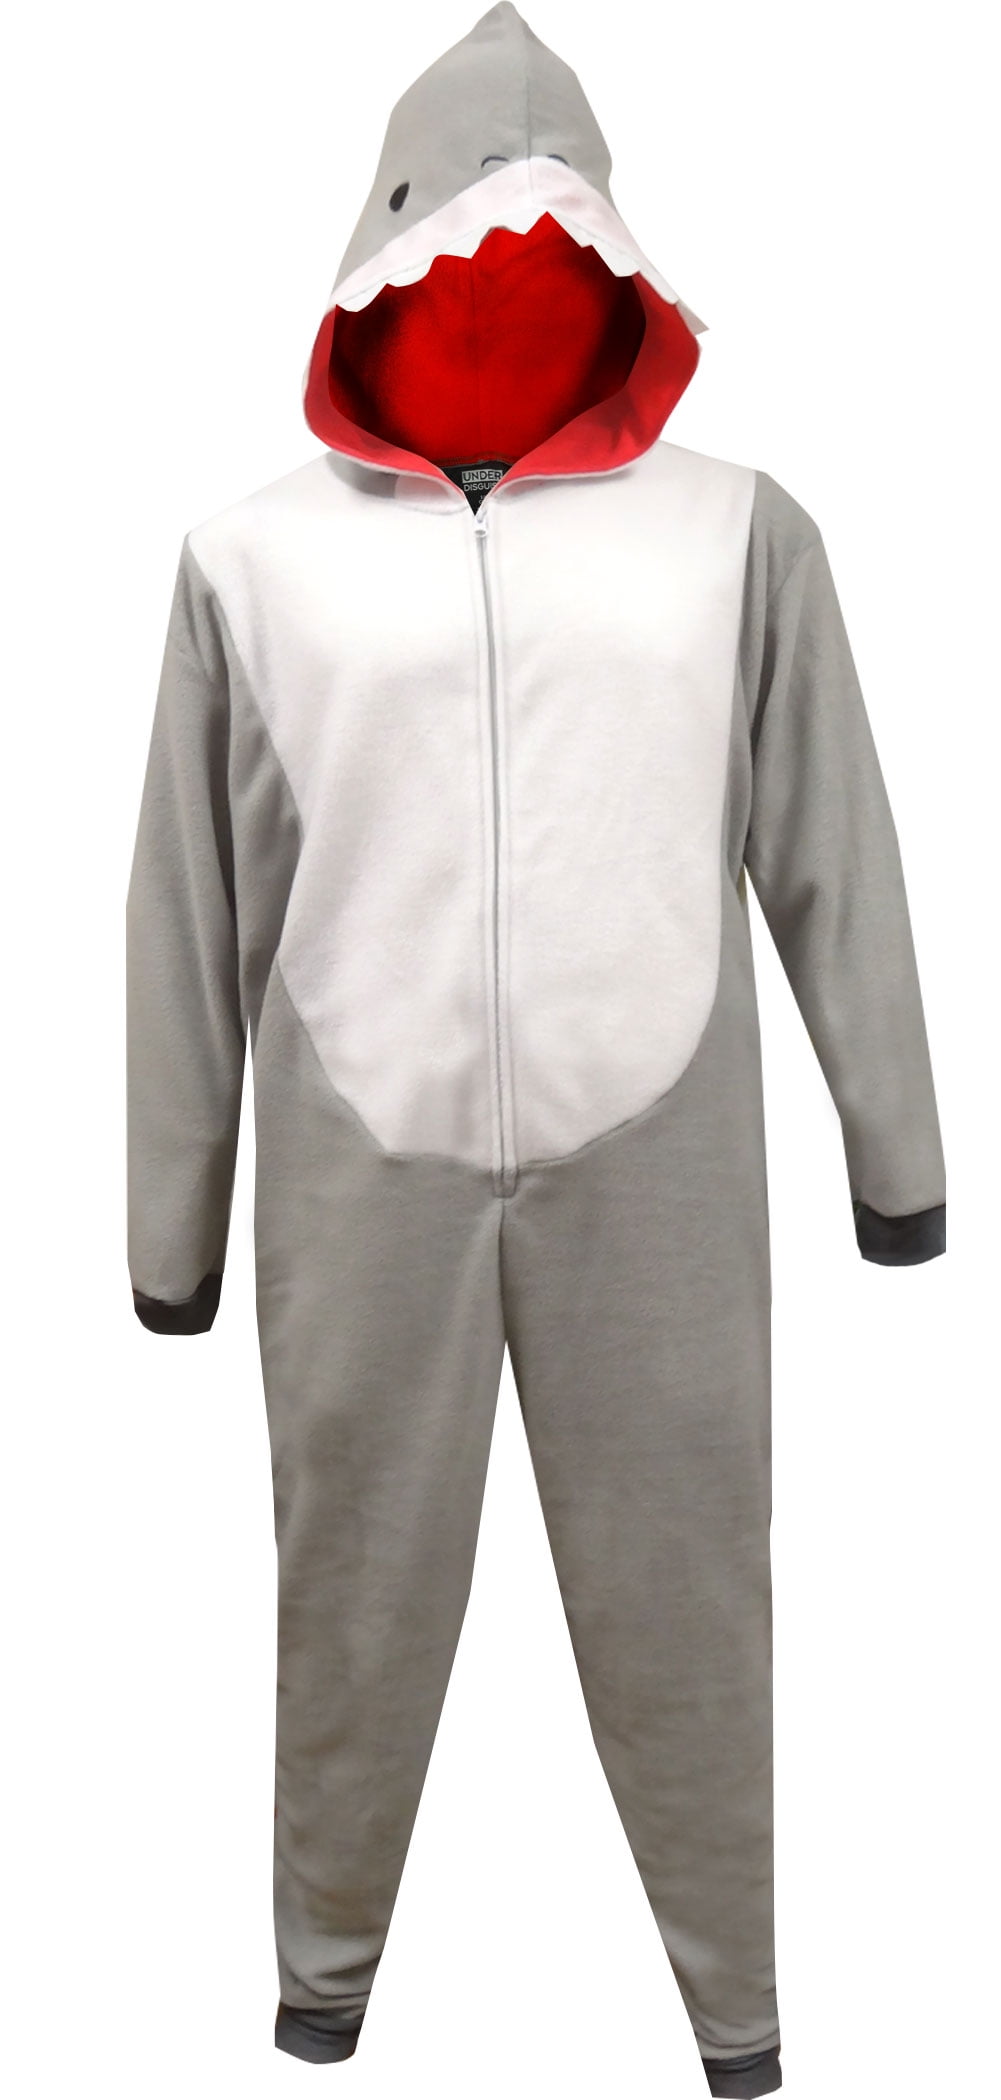 Men’s Shark Union Suit Sz S Scuba Diver Wet Suit Pajamas Pjs Funny Costume